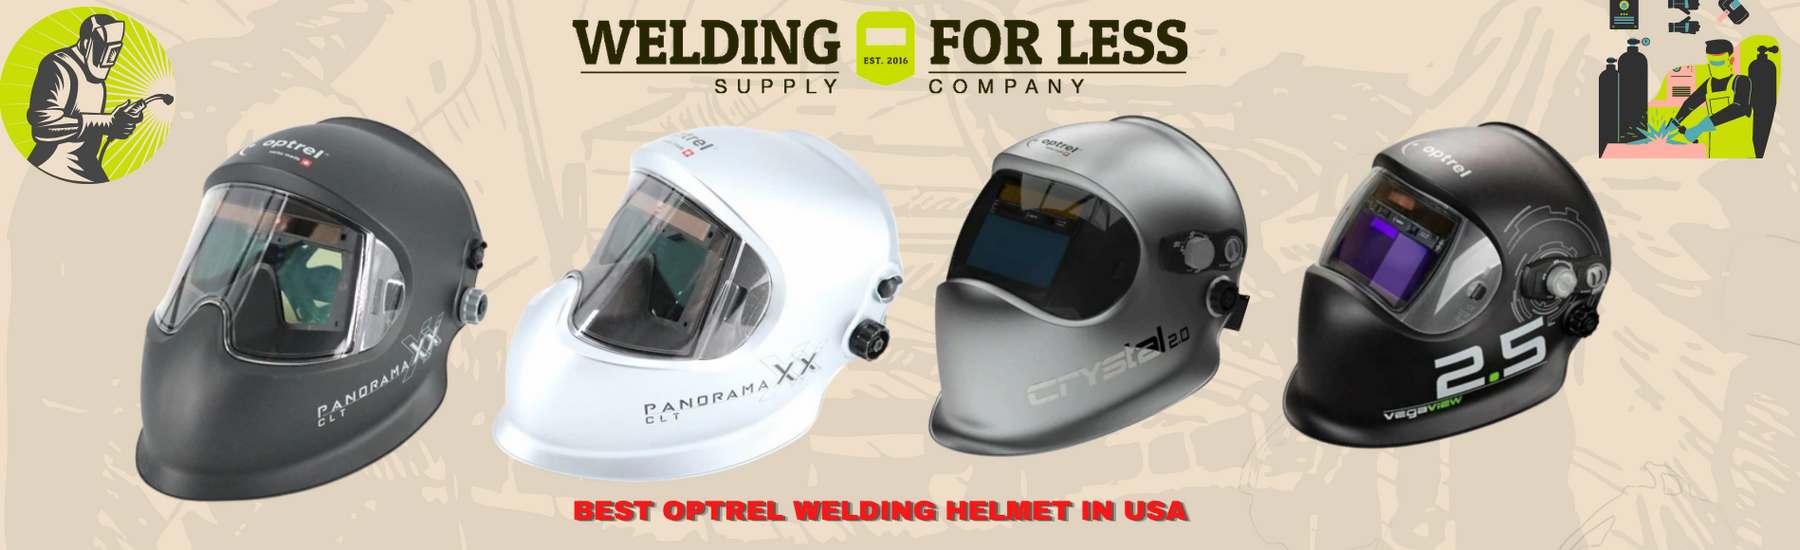 Best Optrel Welding Helmet in USA